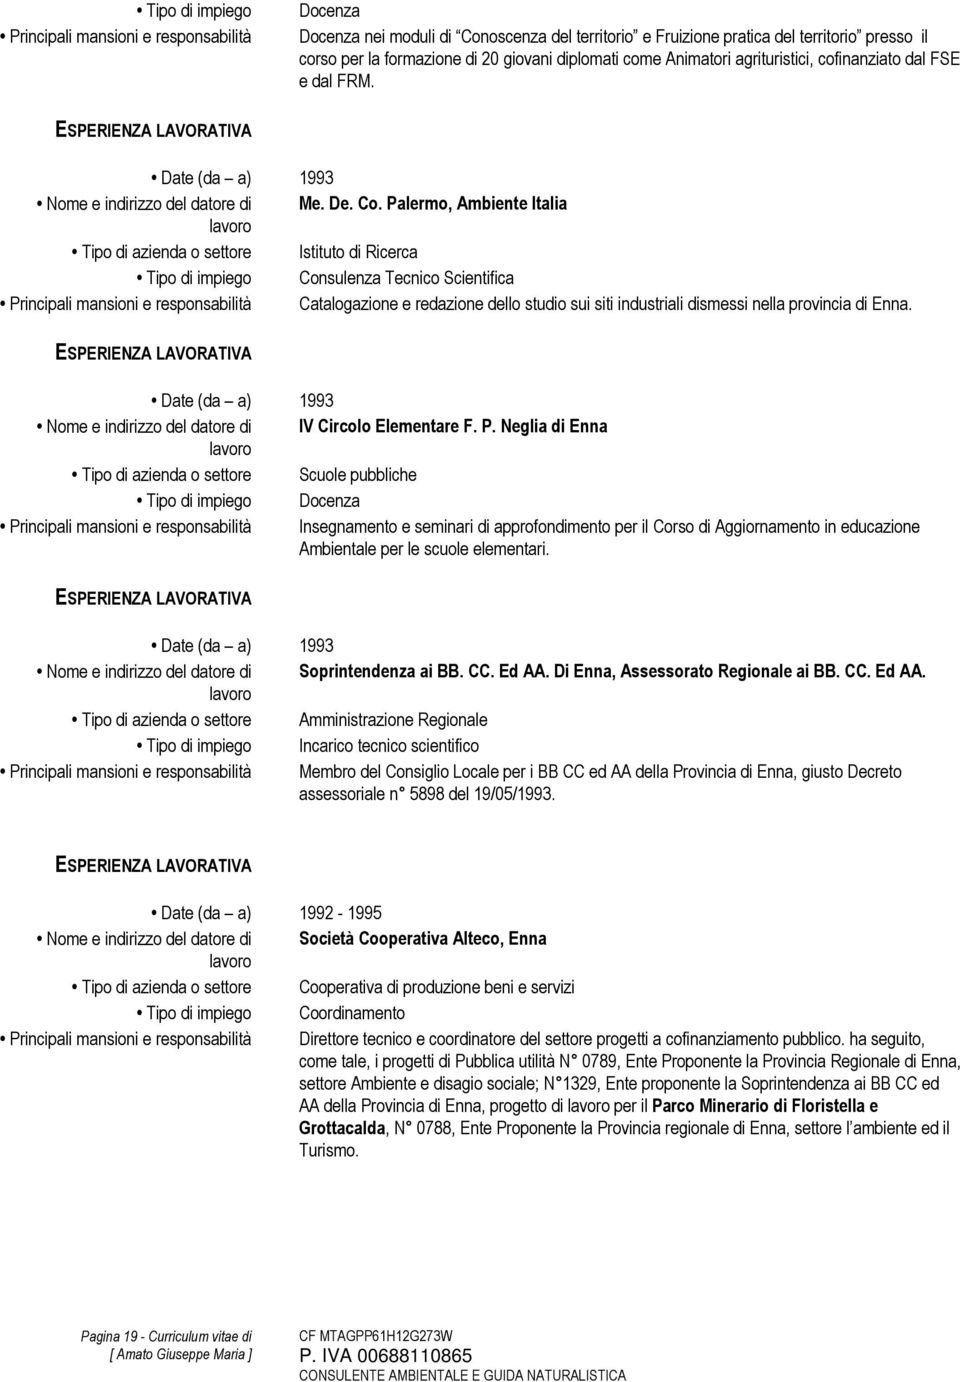 Palermo, Ambiente Italia Tipo di azienda o settore Istituto di Ricerca Tipo di impiego Consulenza Tecnico Scientifica Principali mansioni e responsabilità Catalogazione e redazione dello studio sui